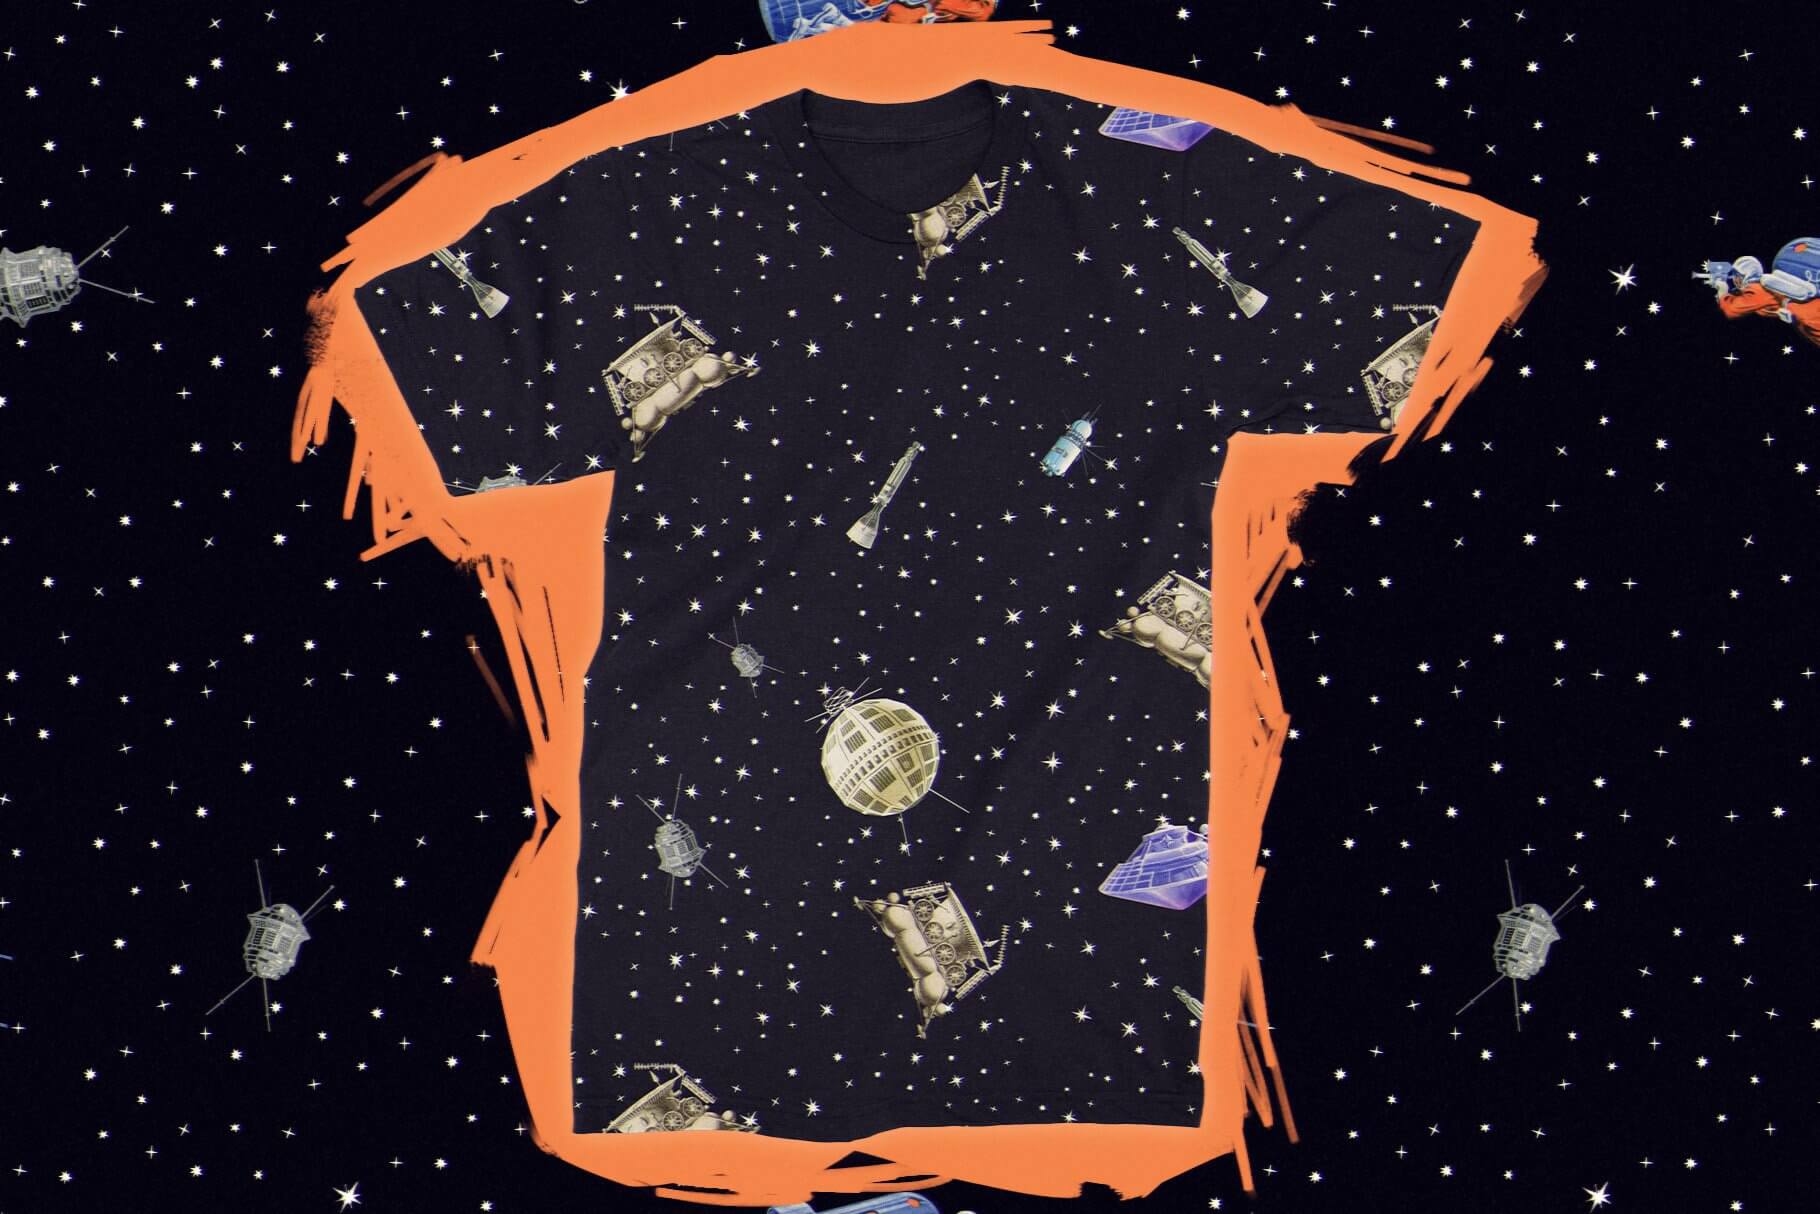 苏联启发复古宇航员太空外星UFO衣服杯子贴纸徽章海报图形元素JPG&PNG素材&Pat图案样式 图片素材 第6张